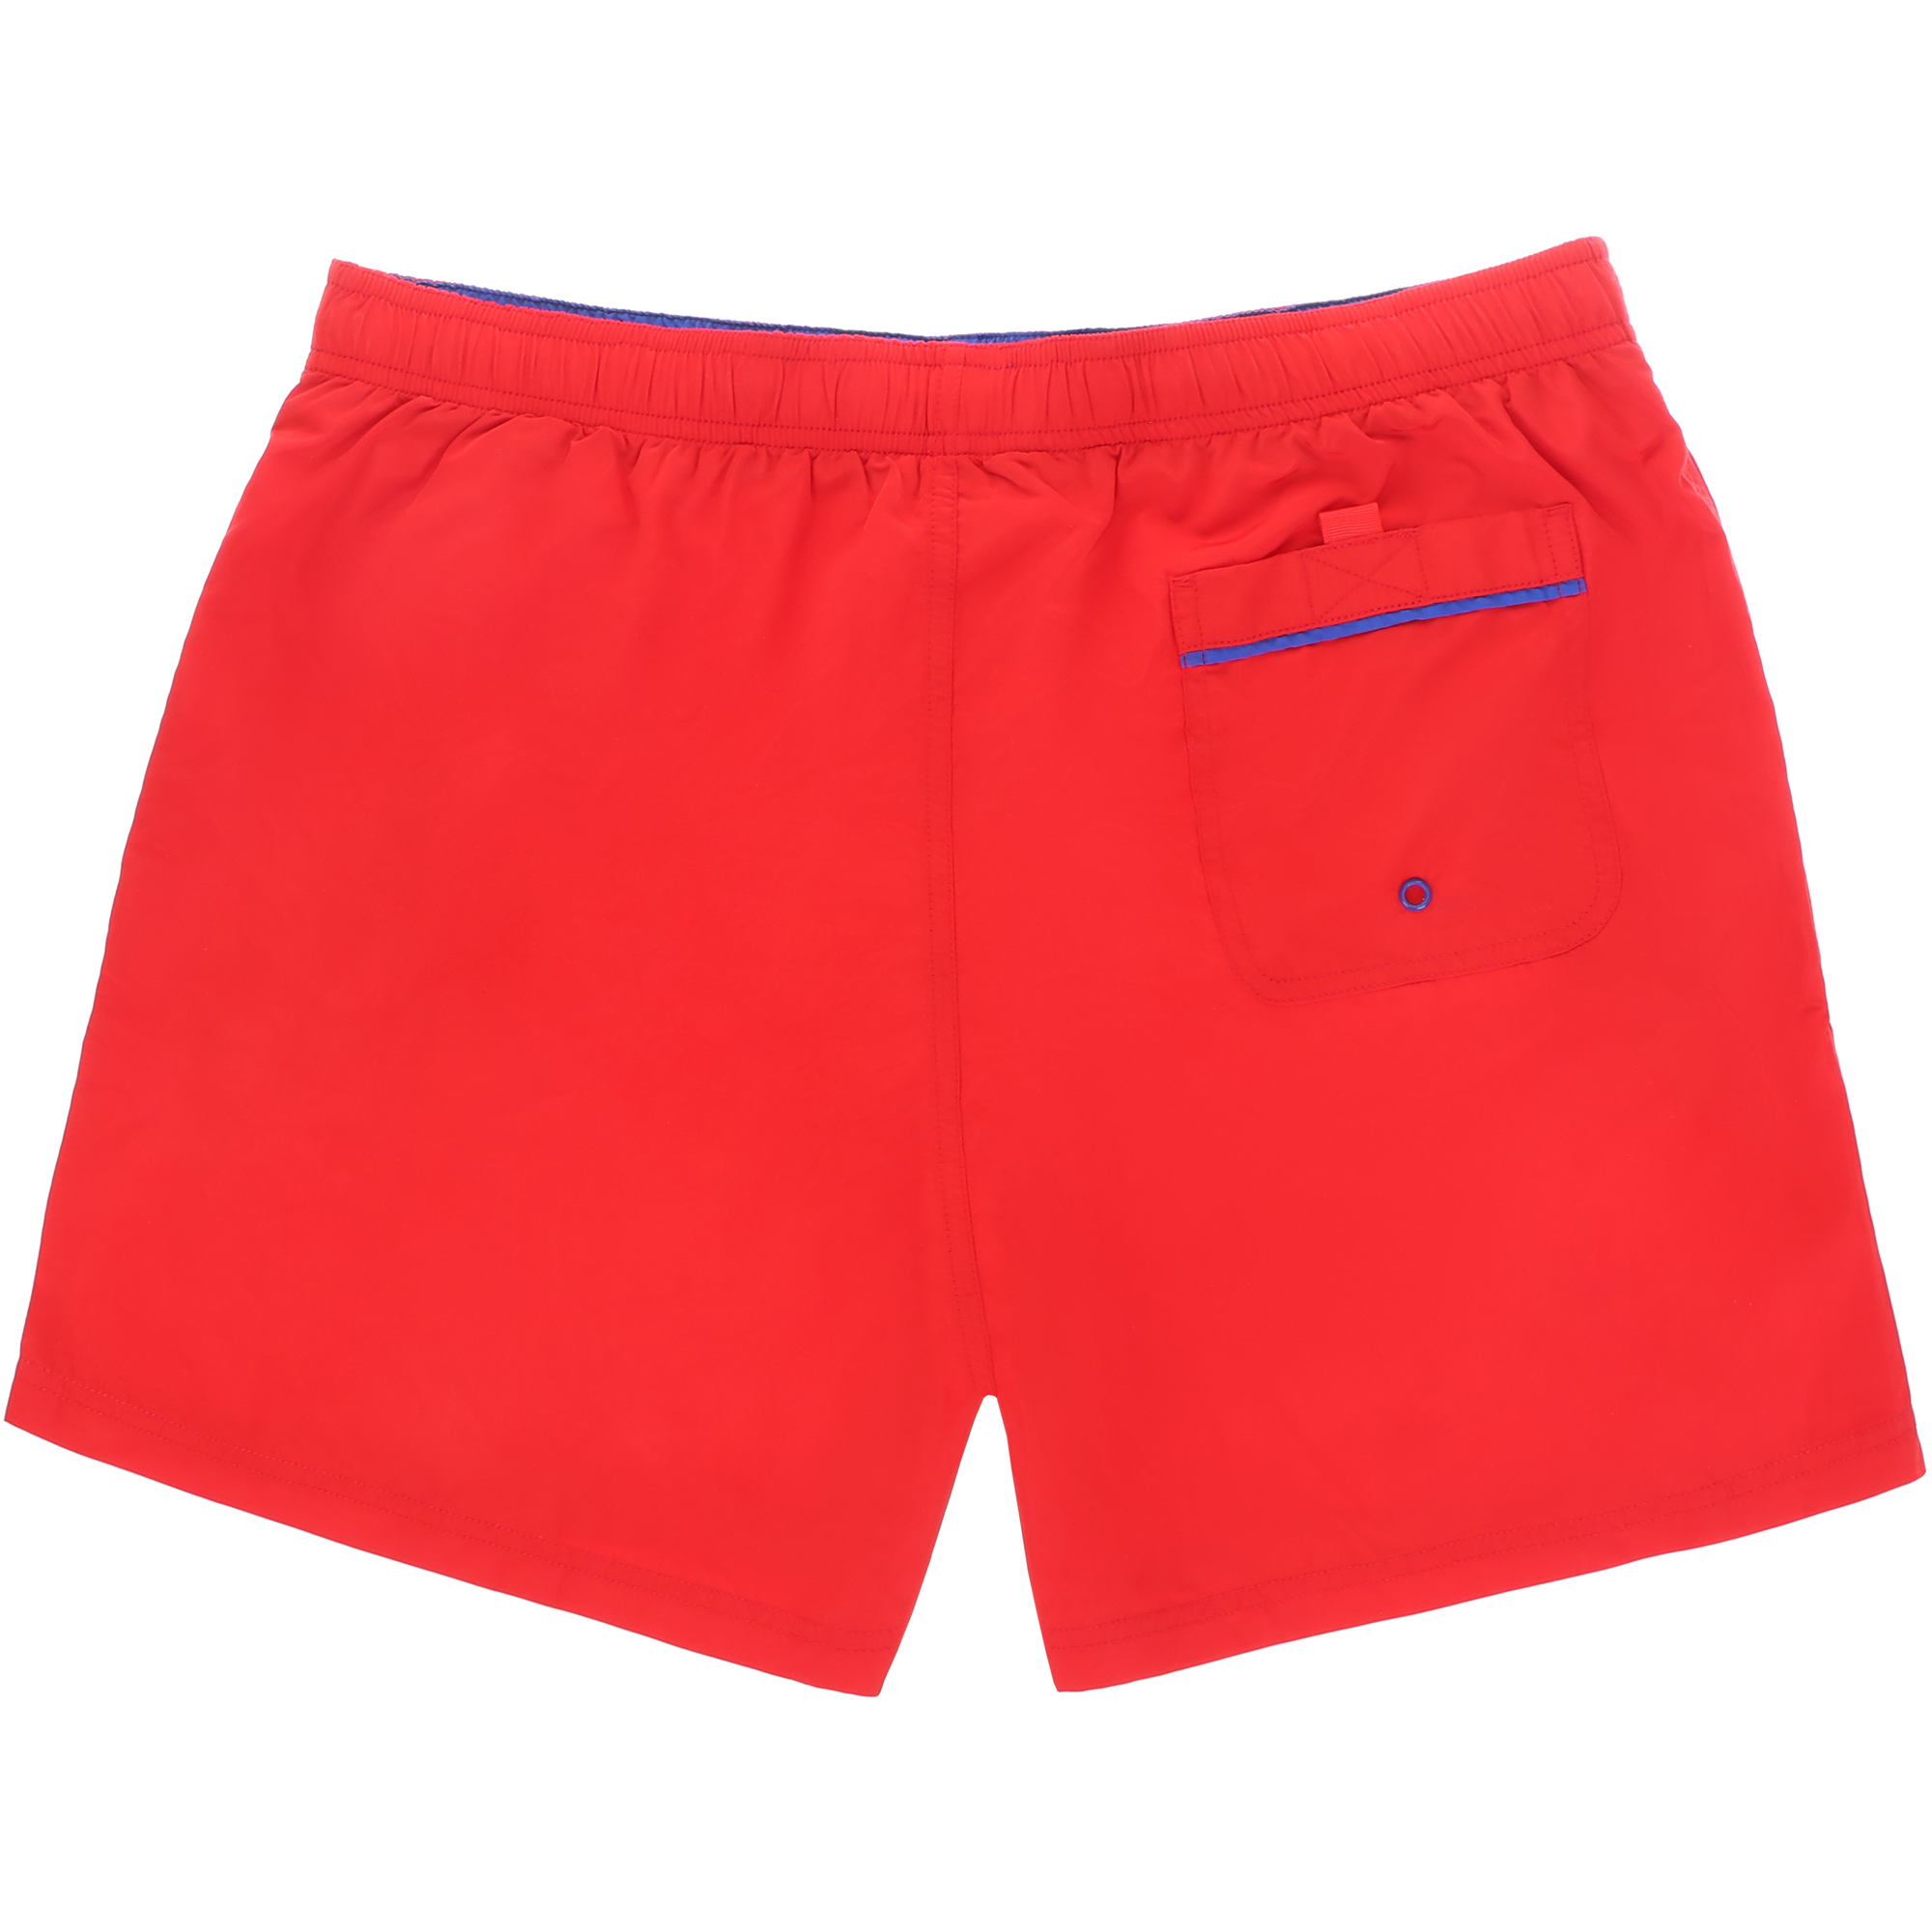 Мужские пляжные шорты Joyord красные, цвет красный, размер XXL - фото 2